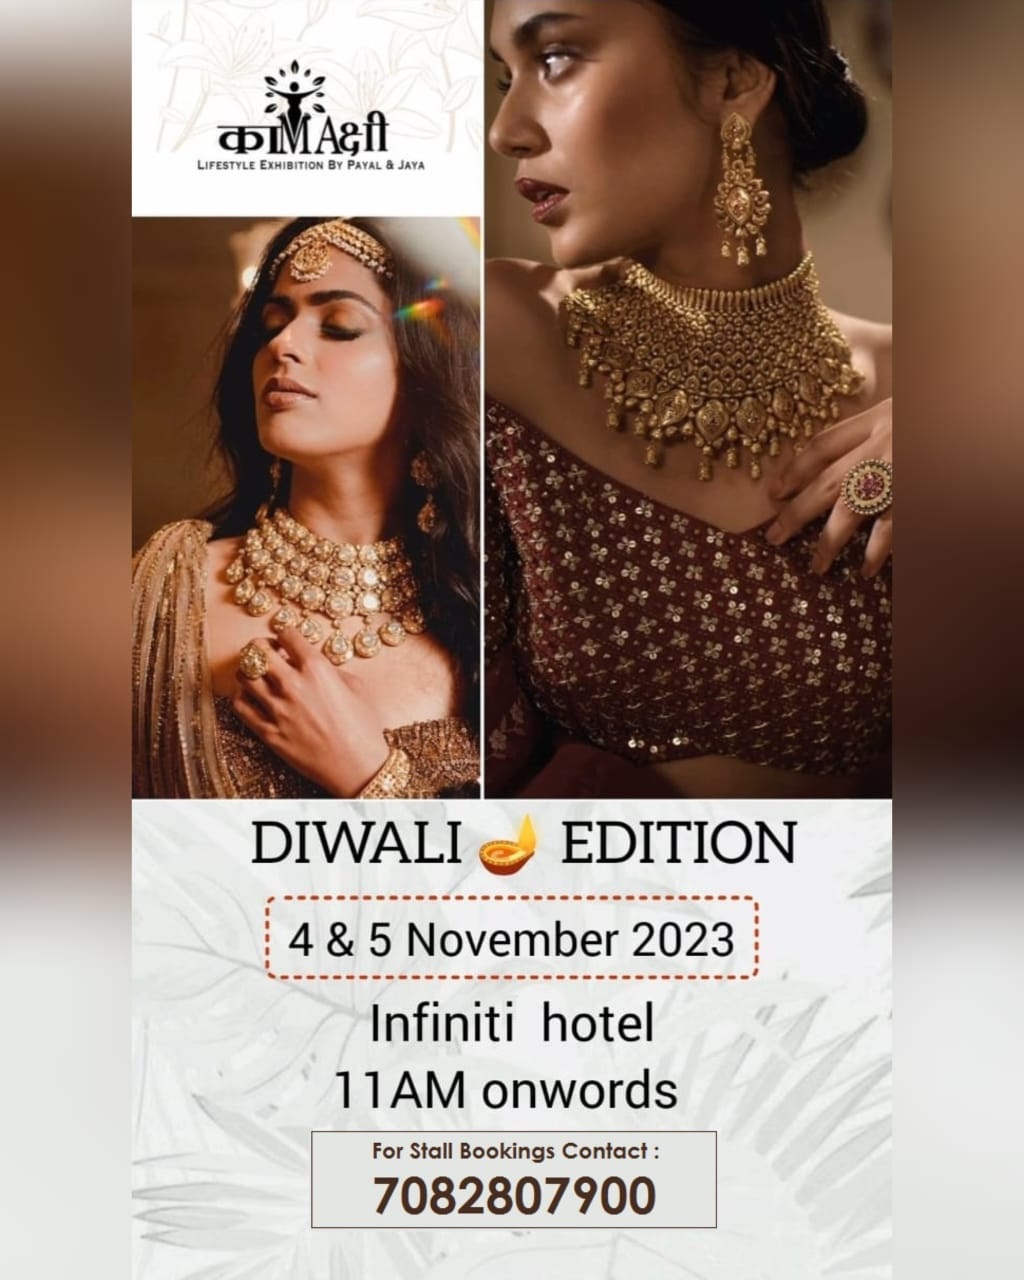 Diwali Edition